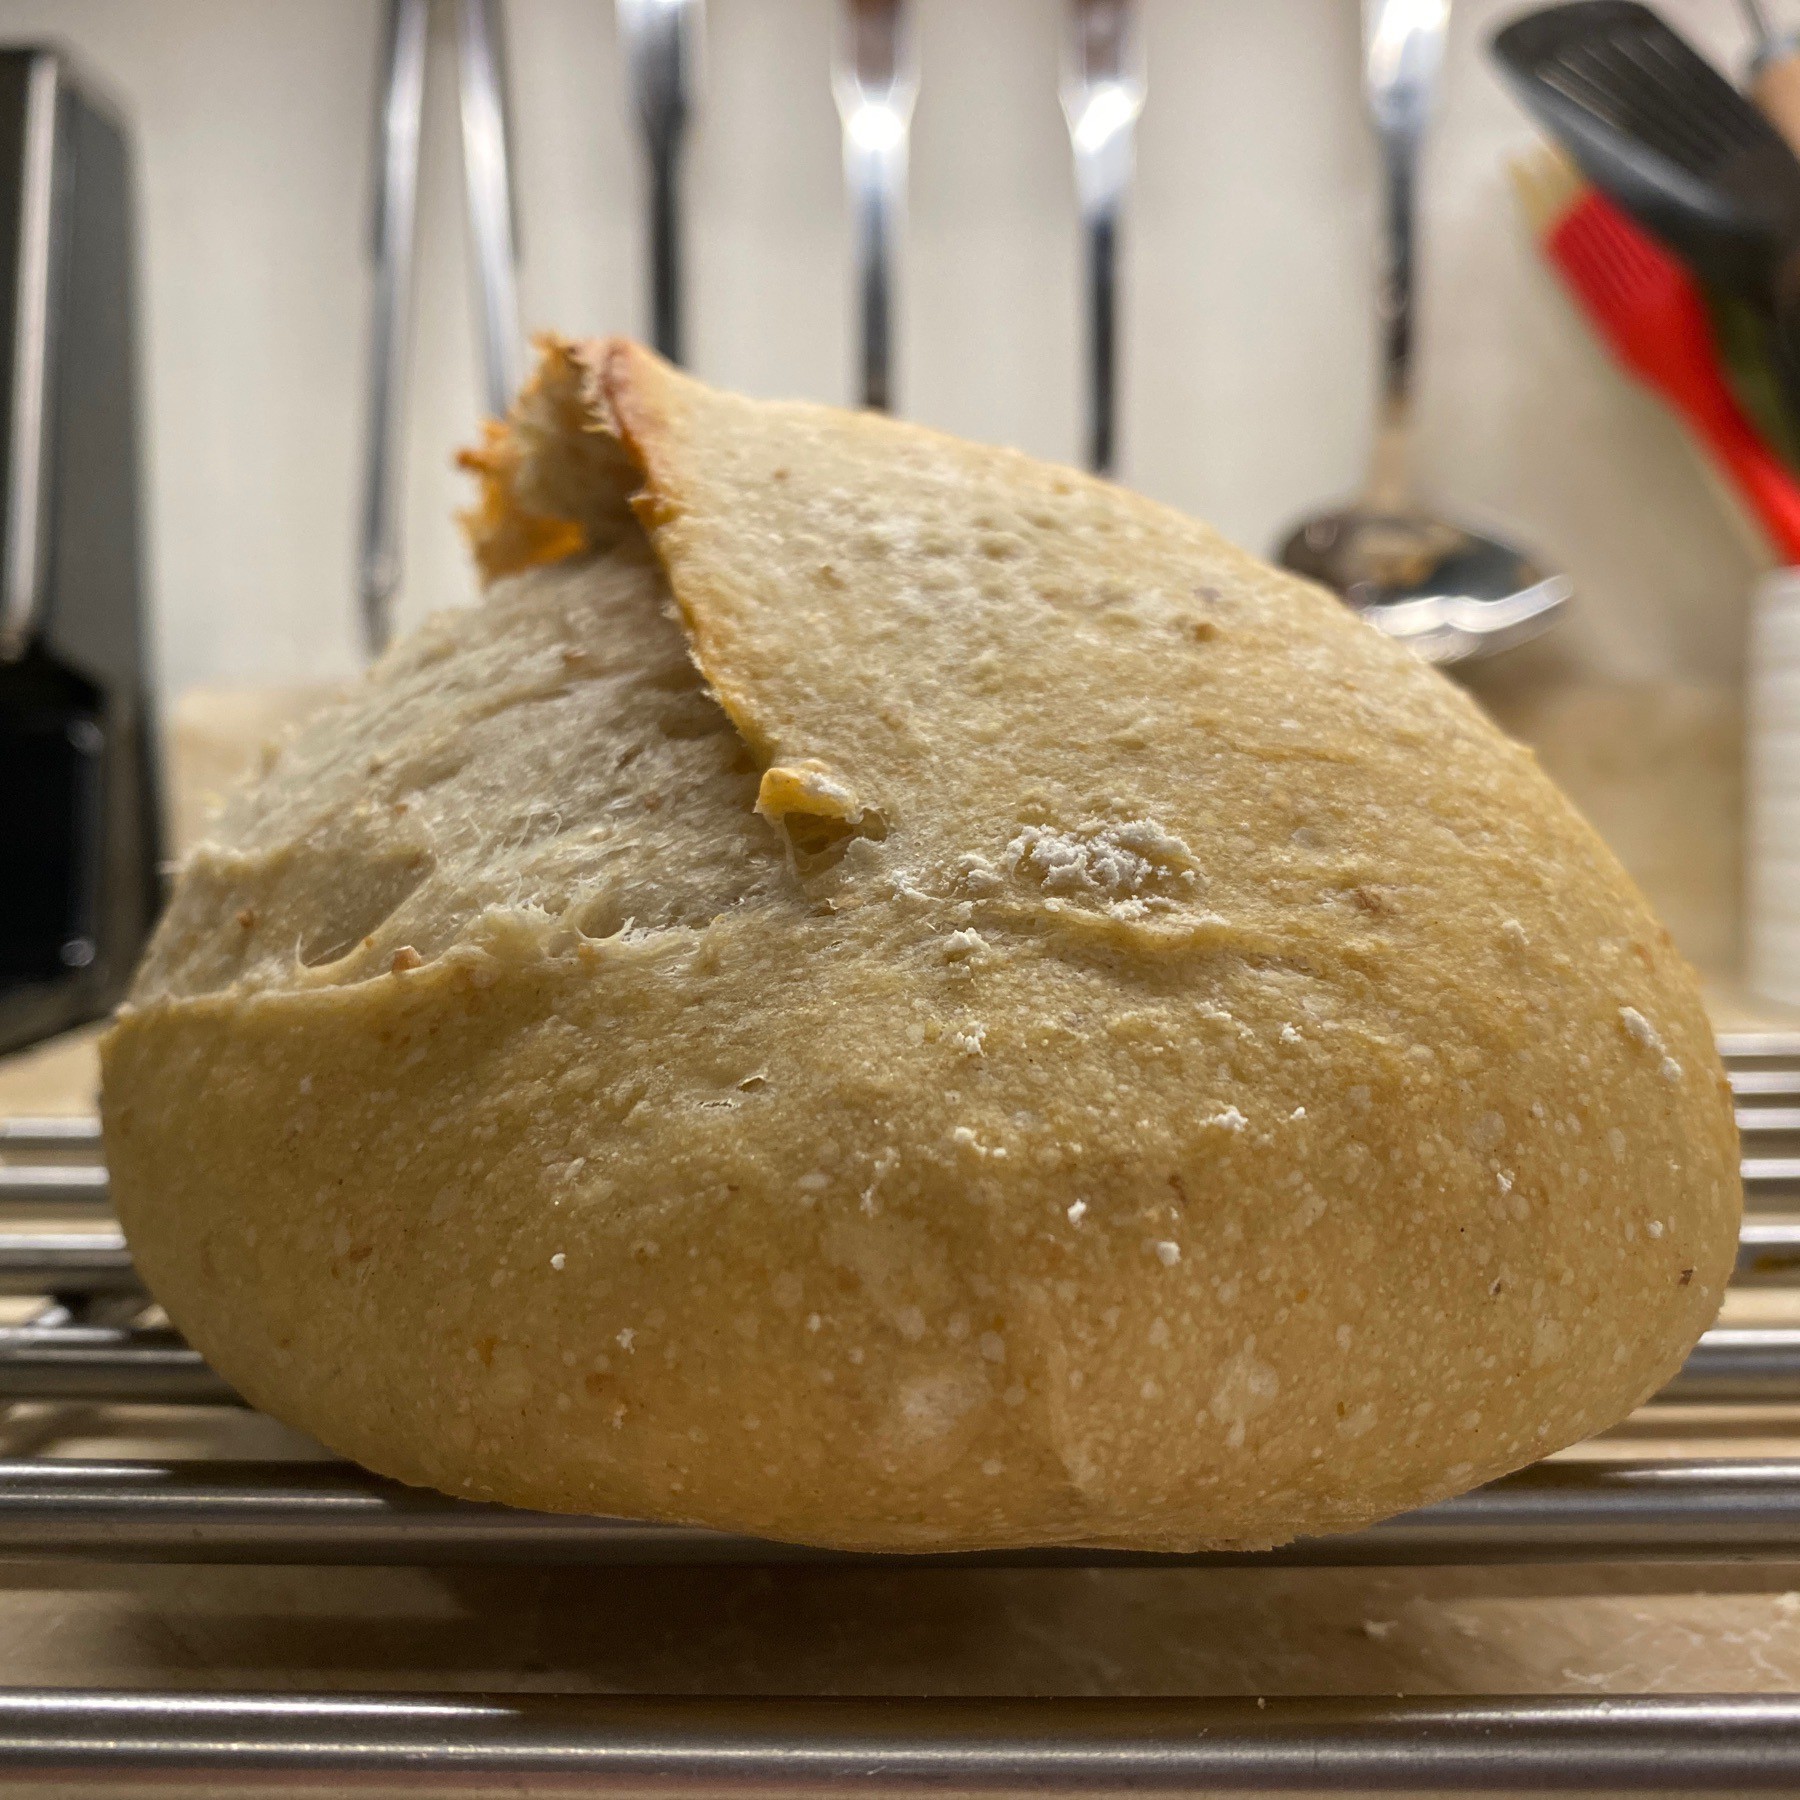 Sourdough bread on metal rack.